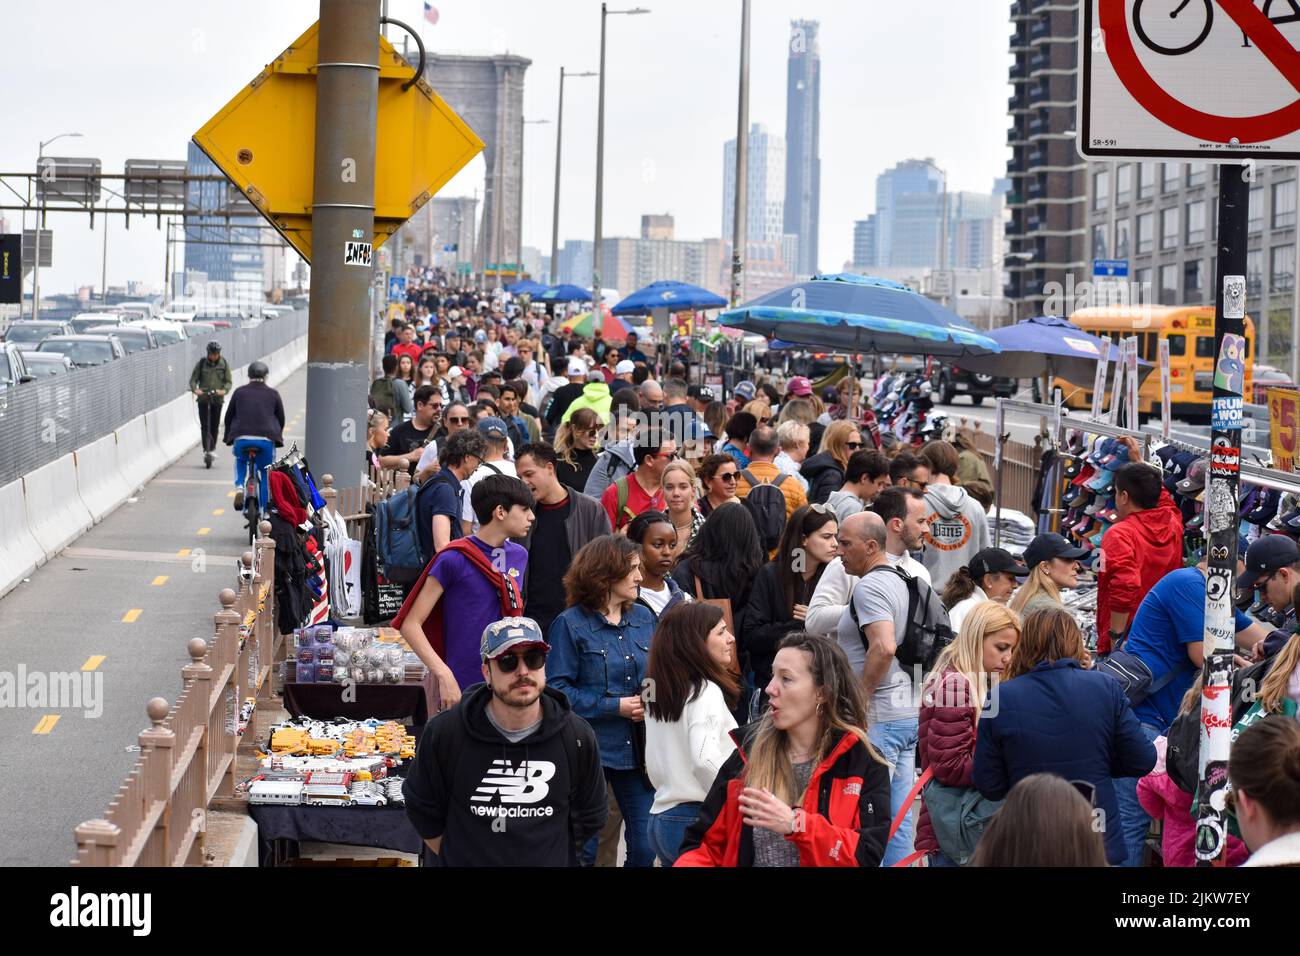 Les touristes reviennent à New York. Le 13 avril 2022, une foule importante traverse le pont de Brooklyn à New York. Banque D'Images